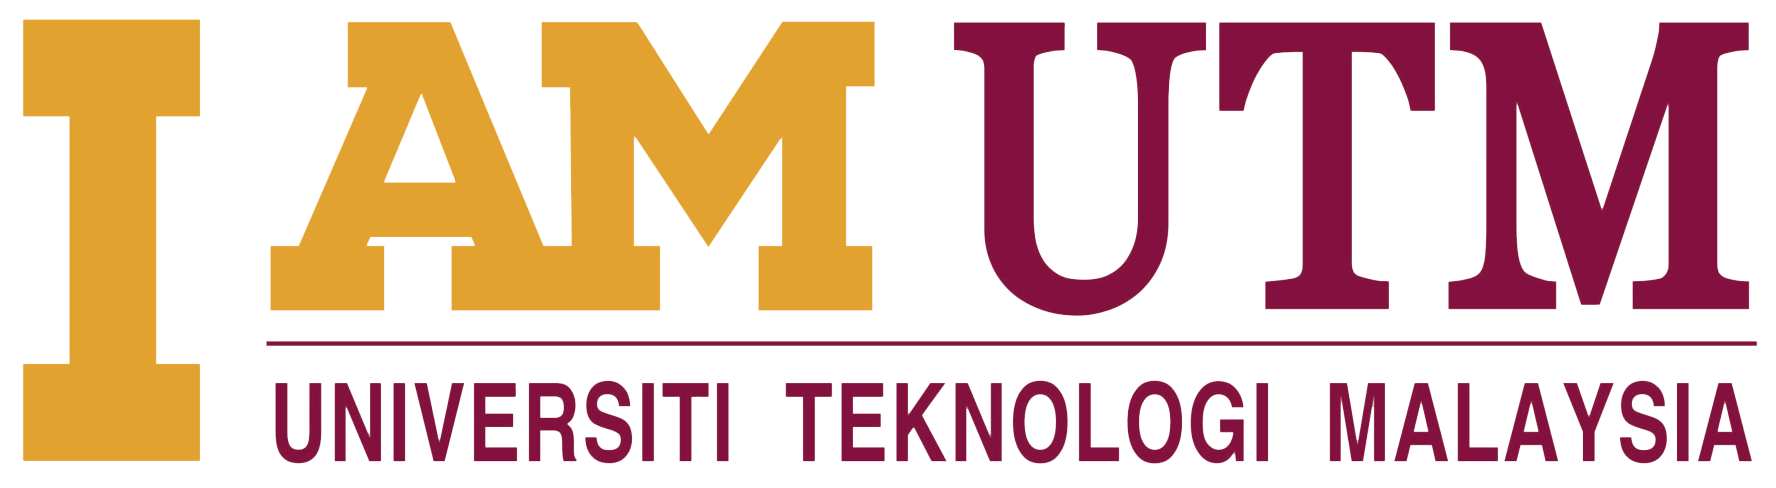 UTM Logo - UTM Brand. Universiti Teknologi Malaysia